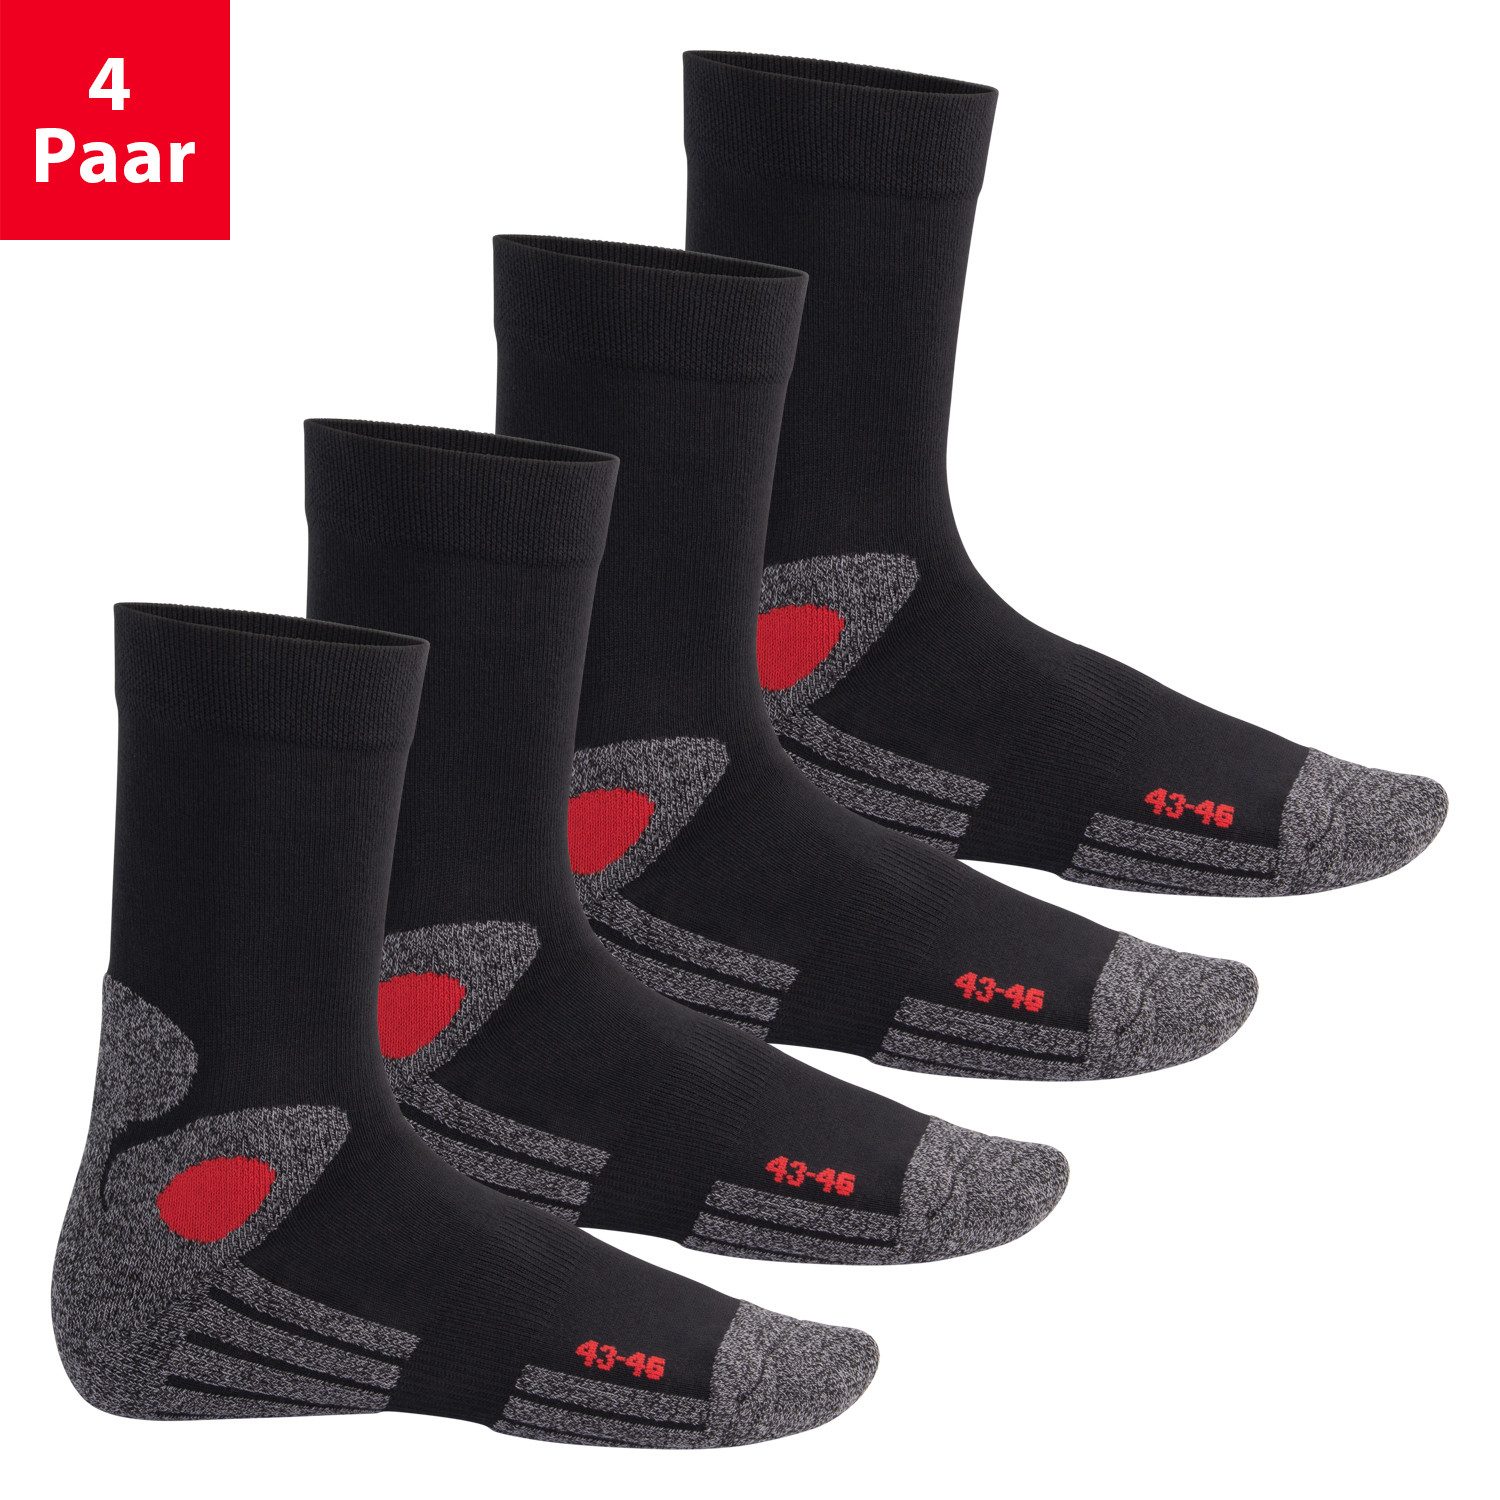 celodoro Arbeitssocken Trekking-Socken für Damen & Herren (4 Paar) mit Frotteesohle